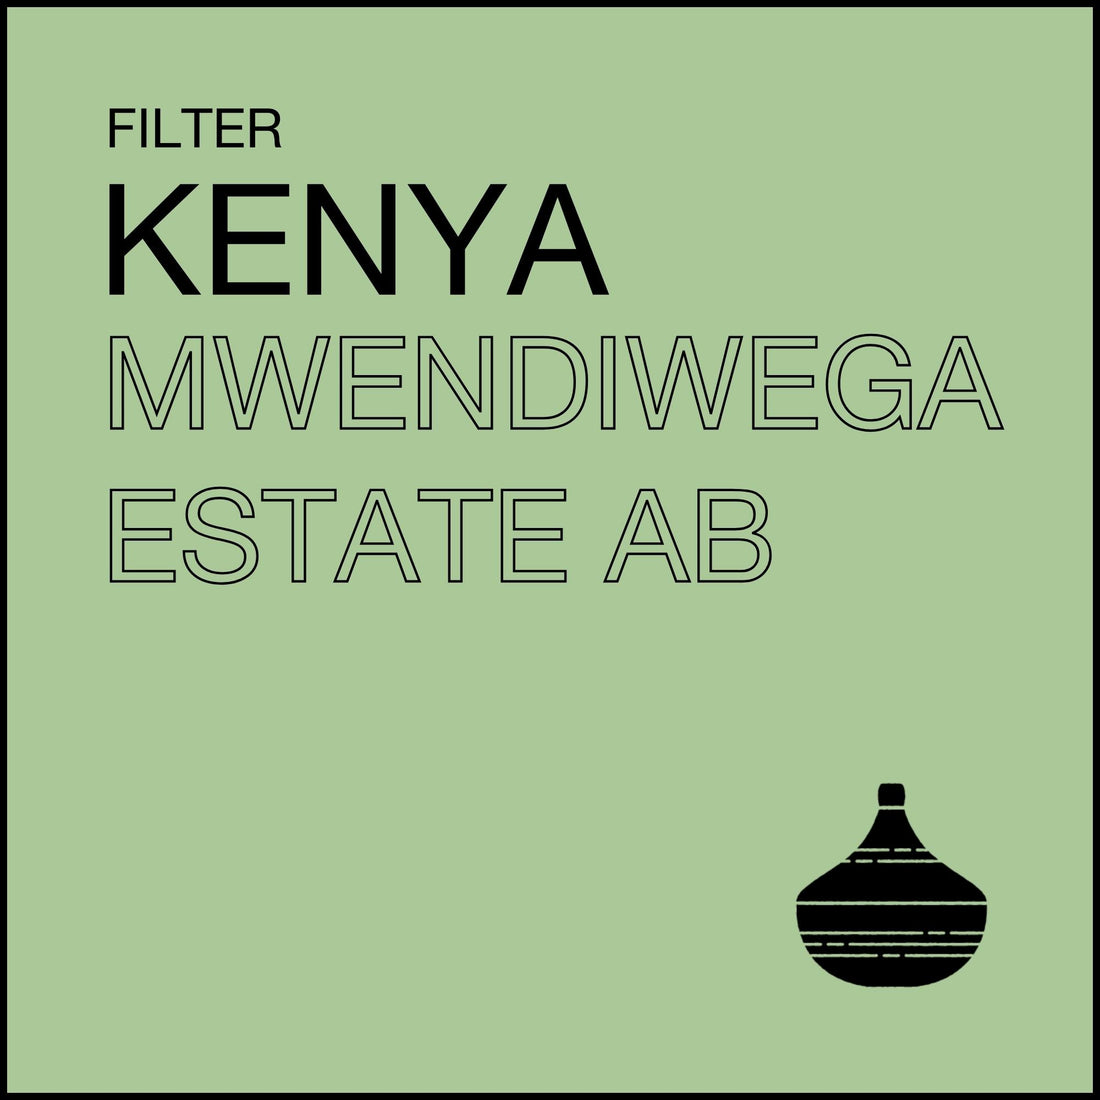 Kenya Mwendiwega Estate AB